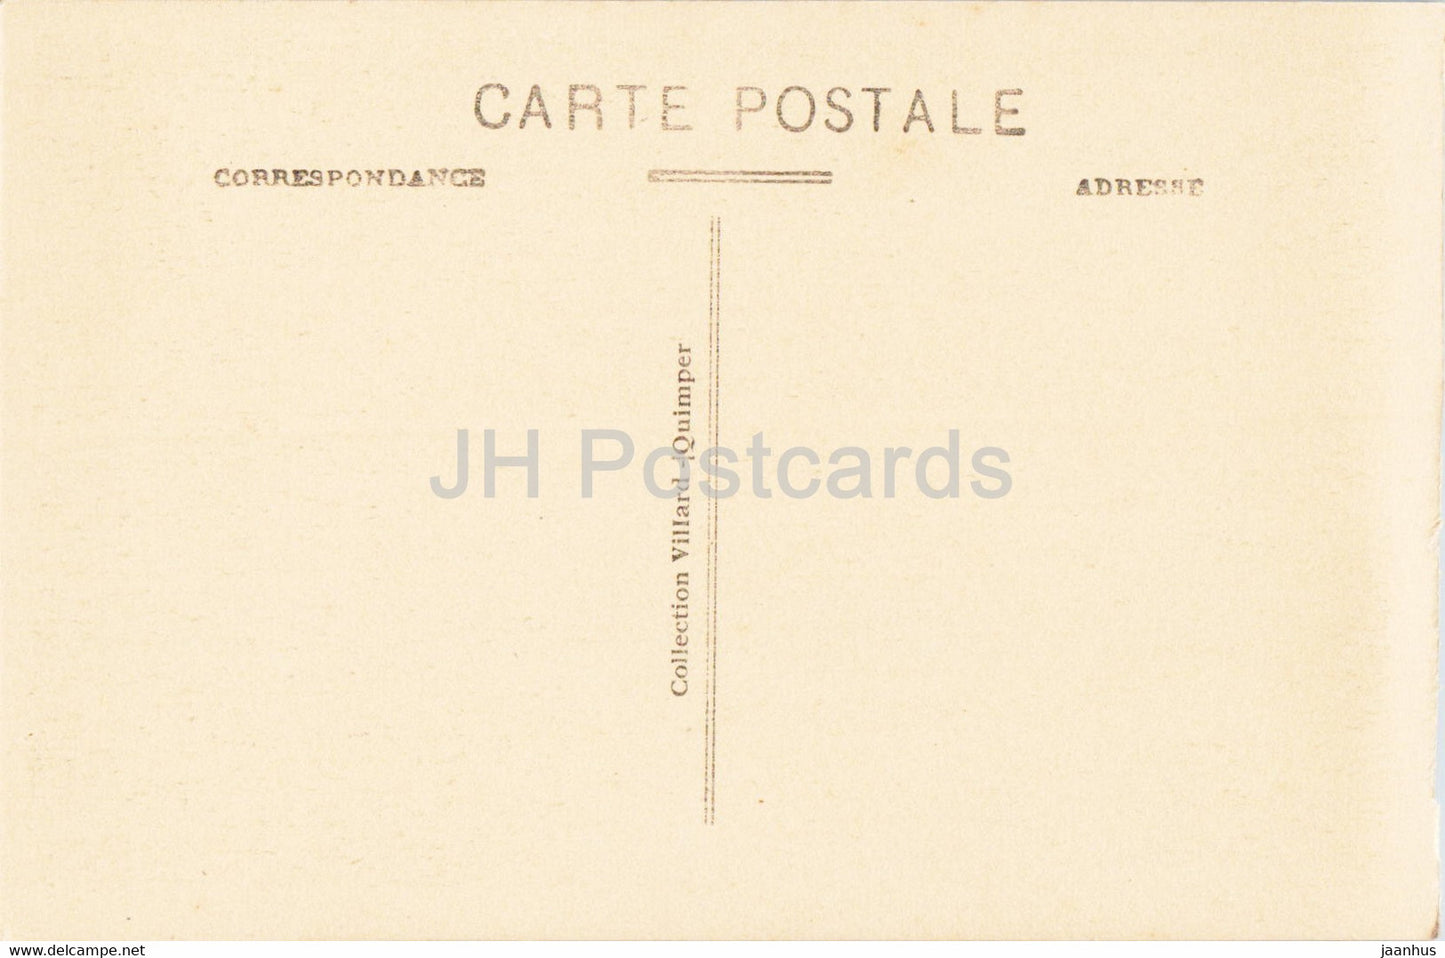 Josselin - Interieur du Chateau - La Bibliotheque - Bibliothek - Schloss - 4990 - alte Postkarte - Frankreich - unbenutzt